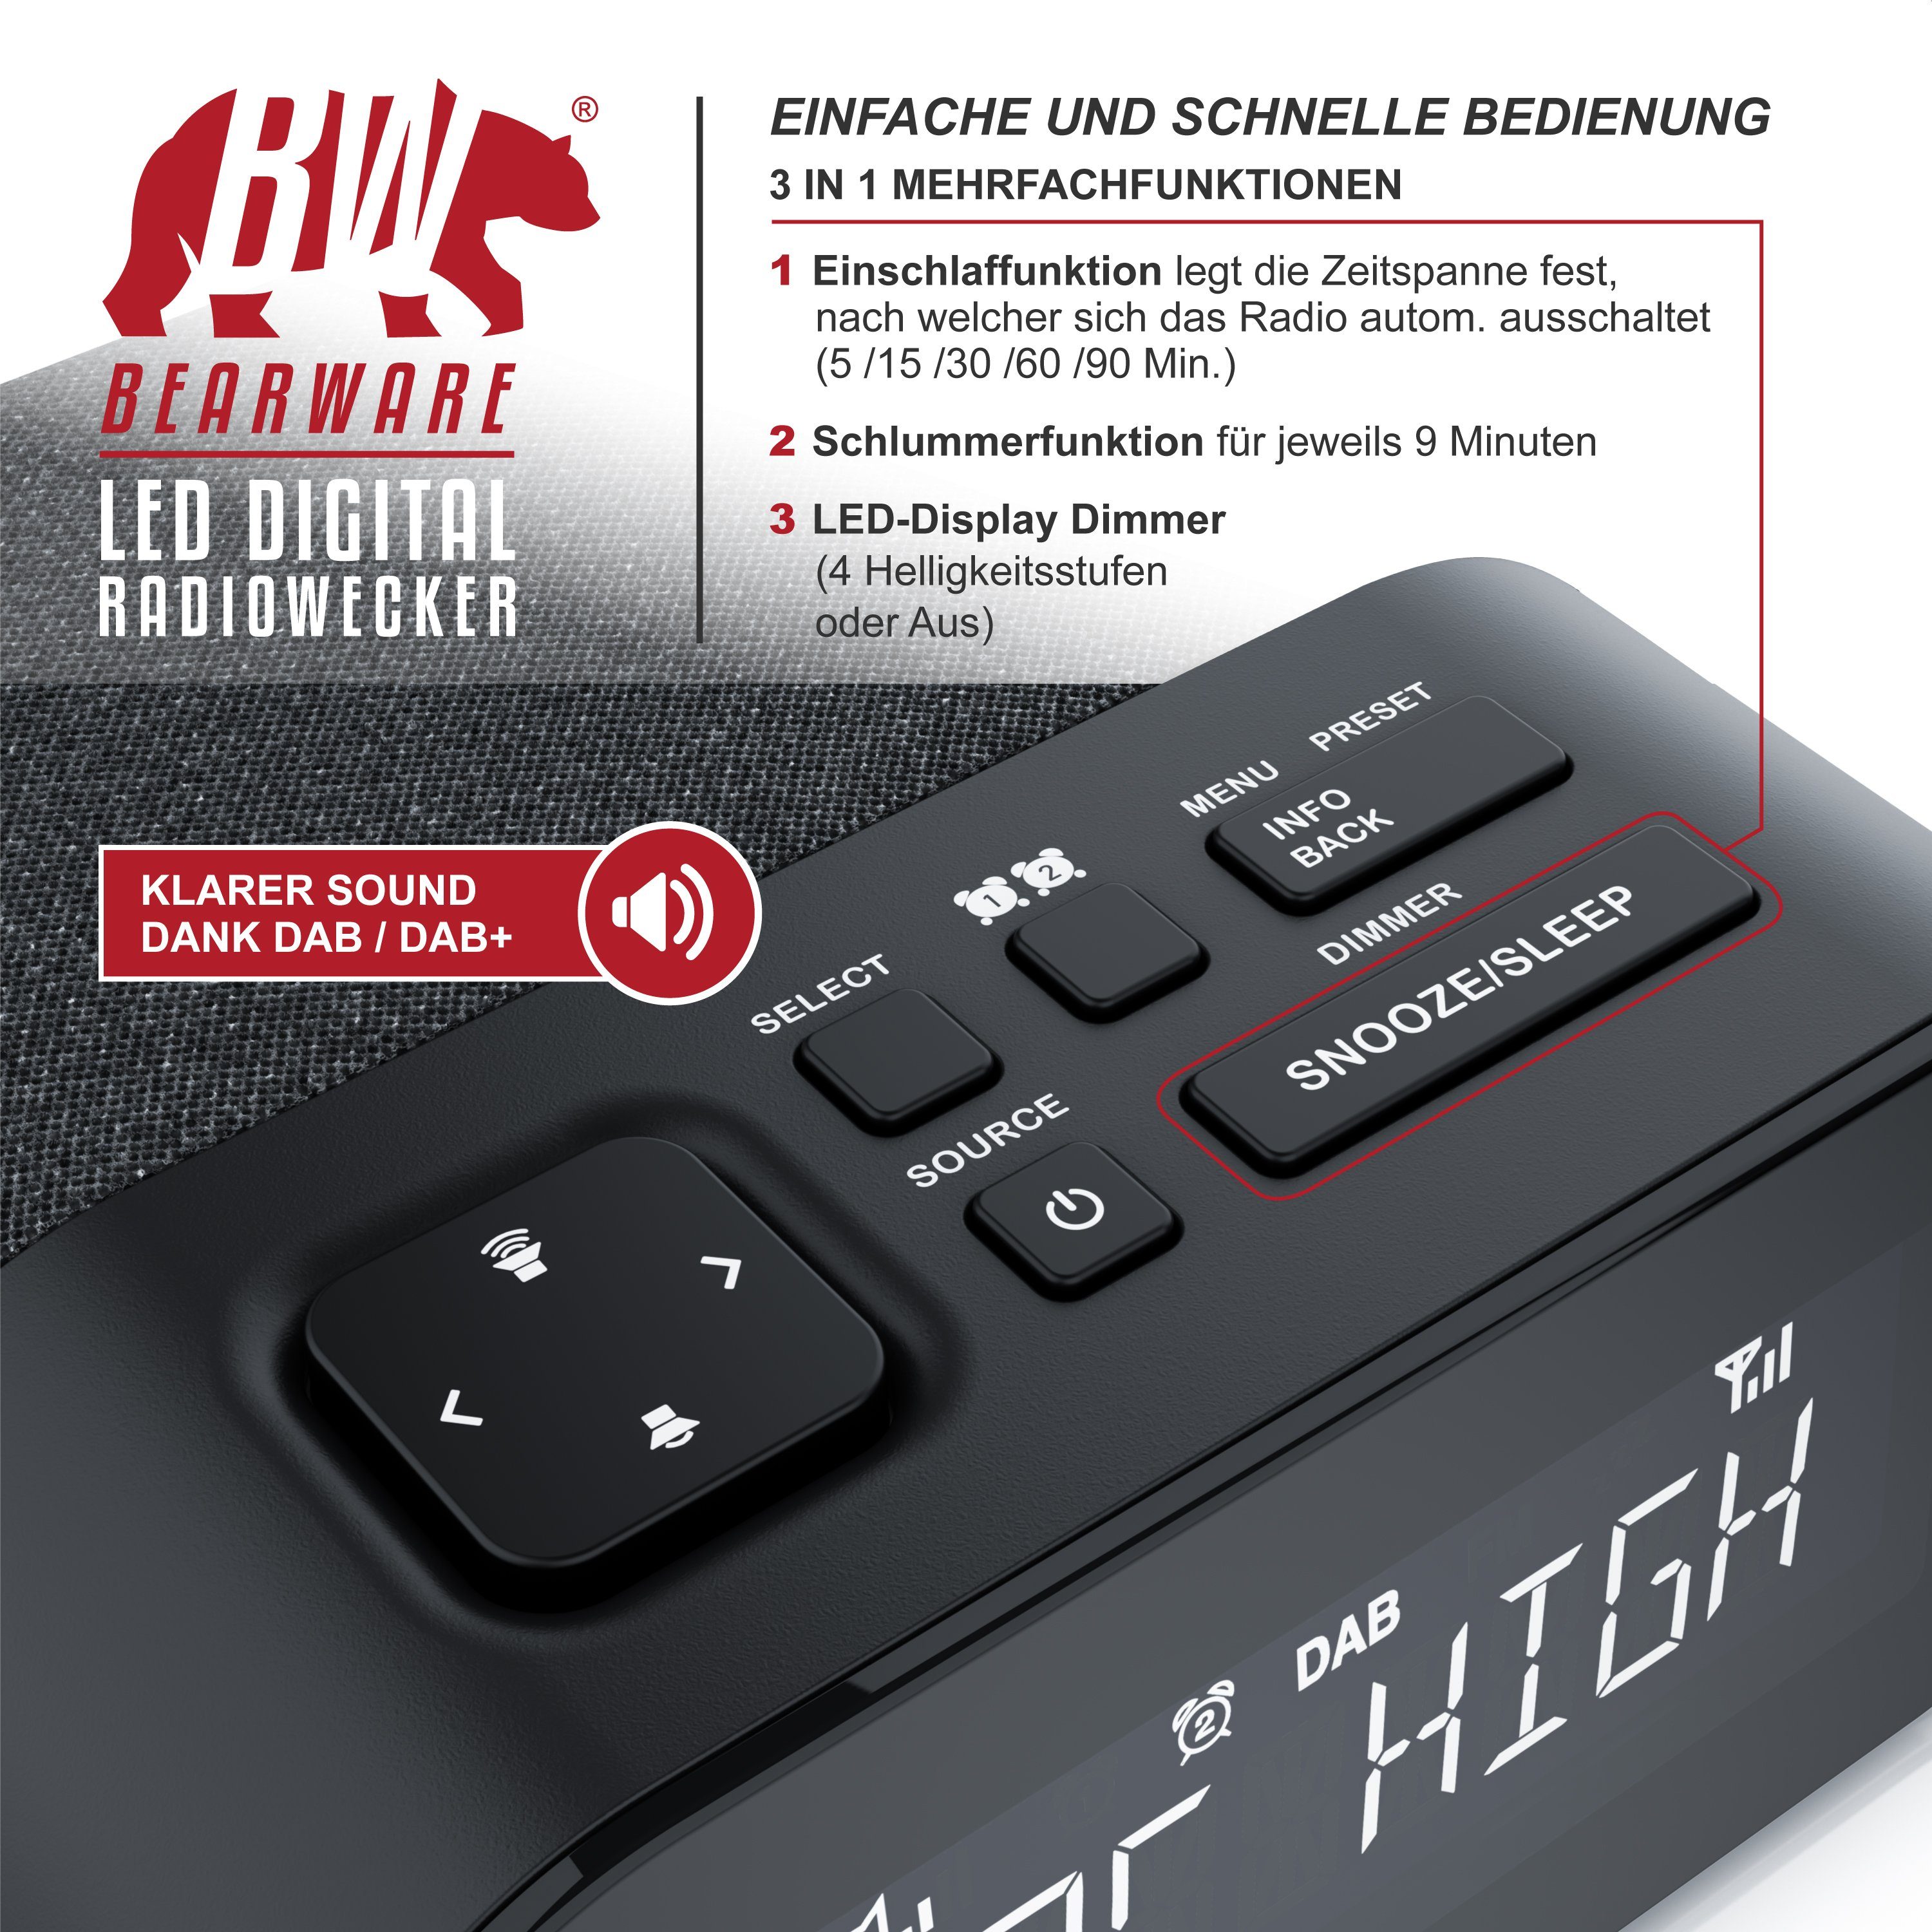 DAB + & Radiowecker BEARWARE digital, 4 Küchenradio Helligkeitsstufen Radio, Wecker, FM